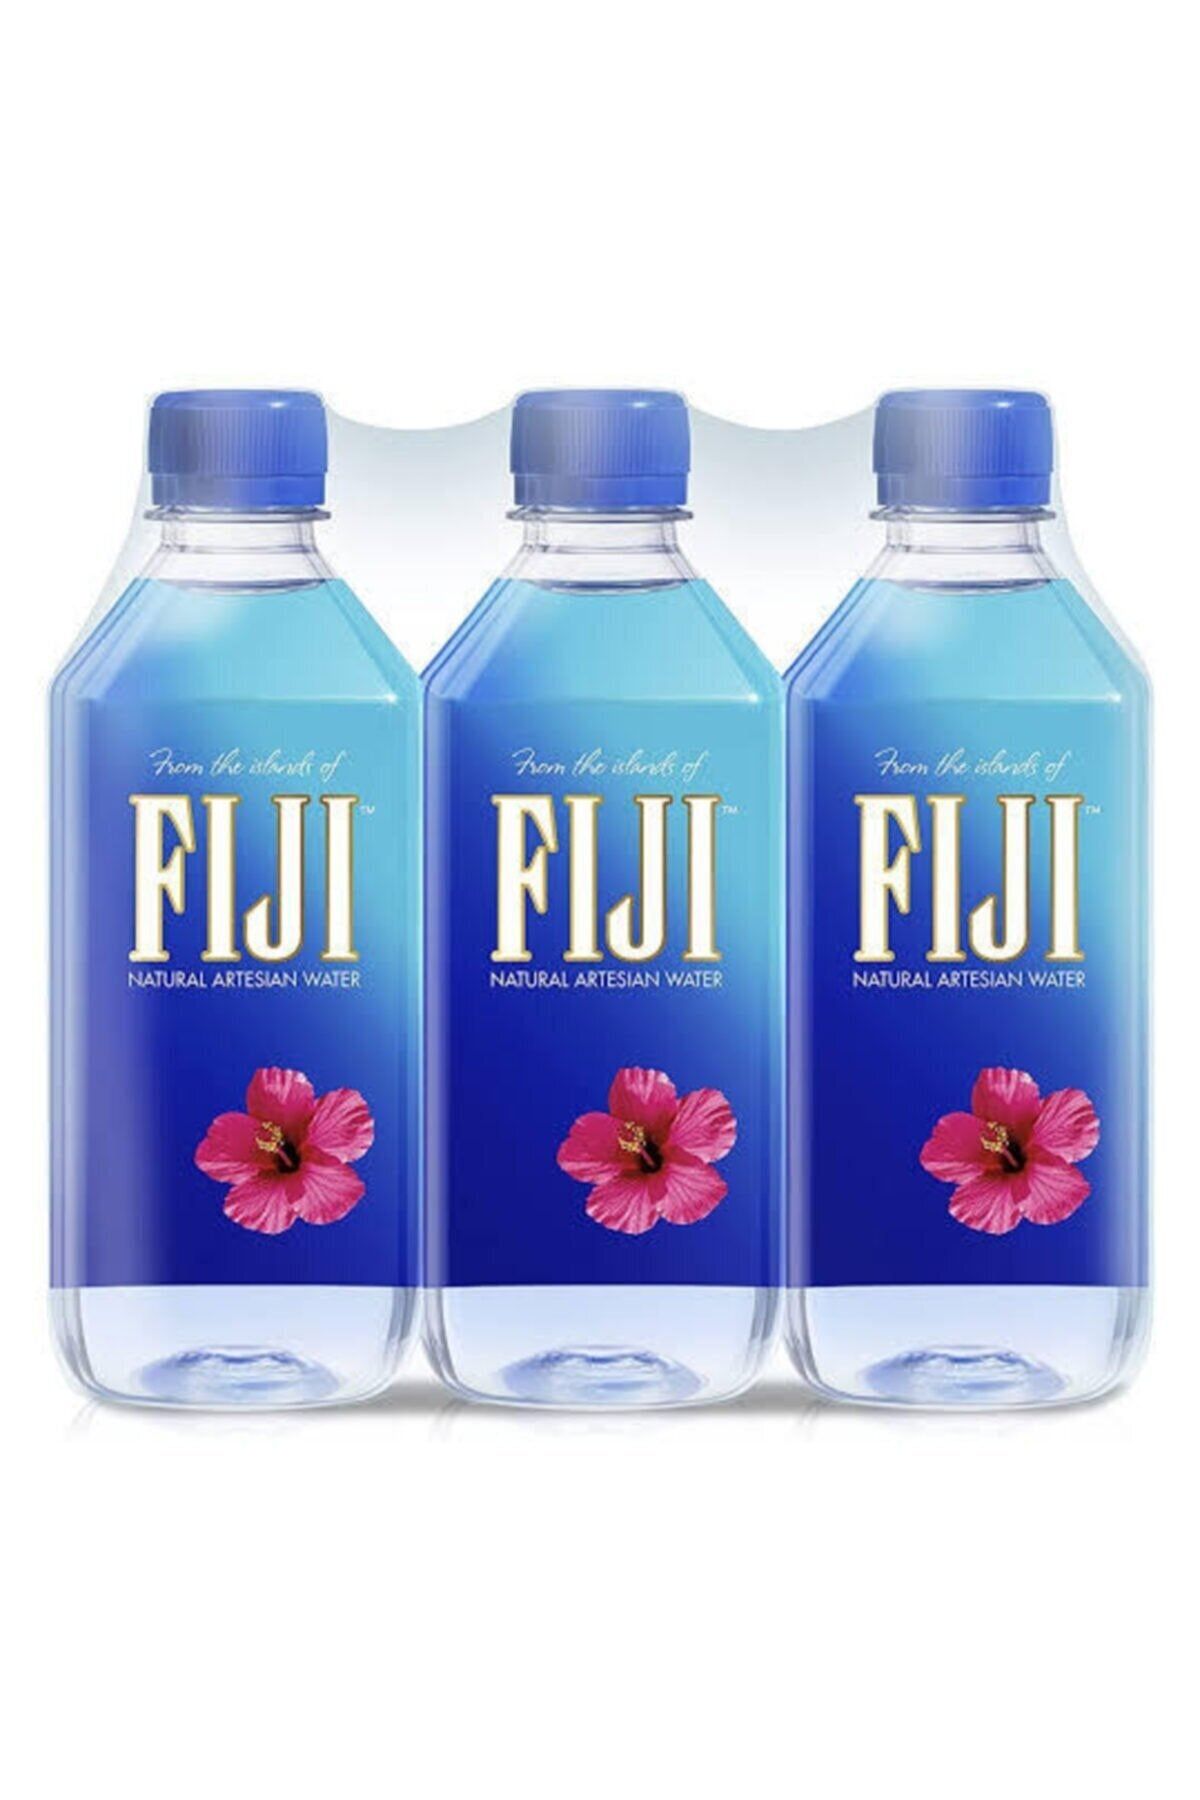 Fiji Water-su (6X500ML)